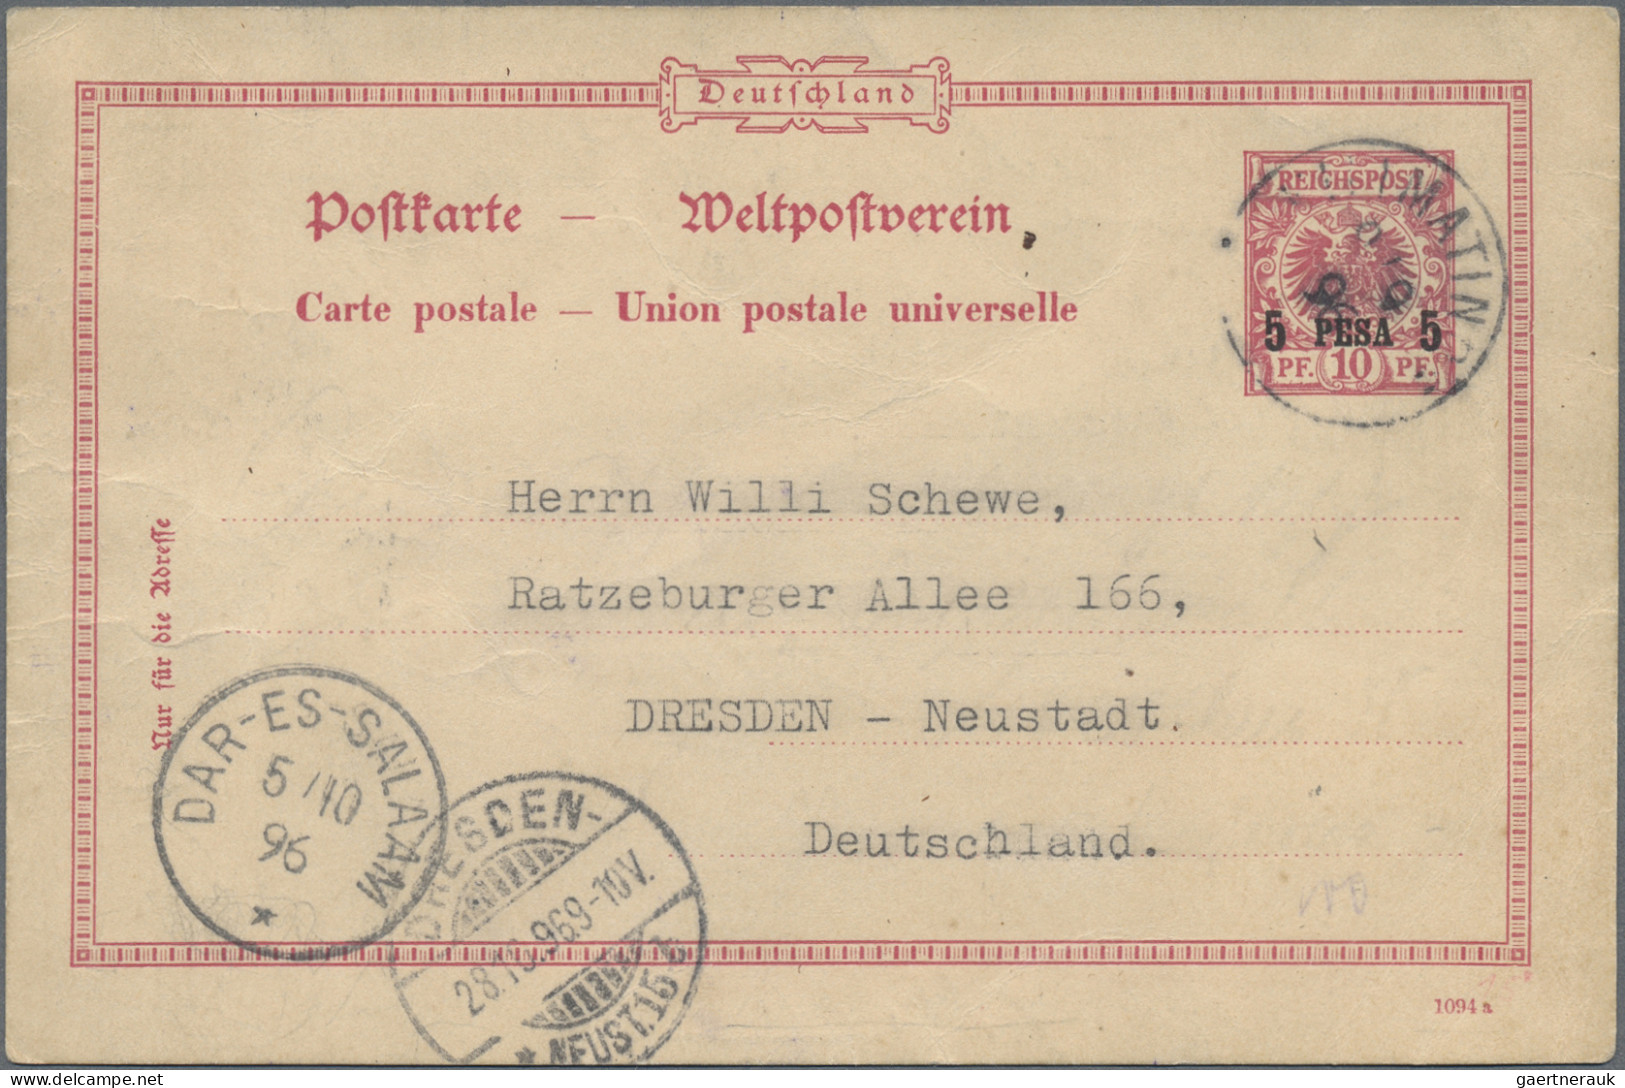 Deutsch-Ostafrika: 1896/1912, Partie von 18 Briefen und Karten, soweit ersichtli